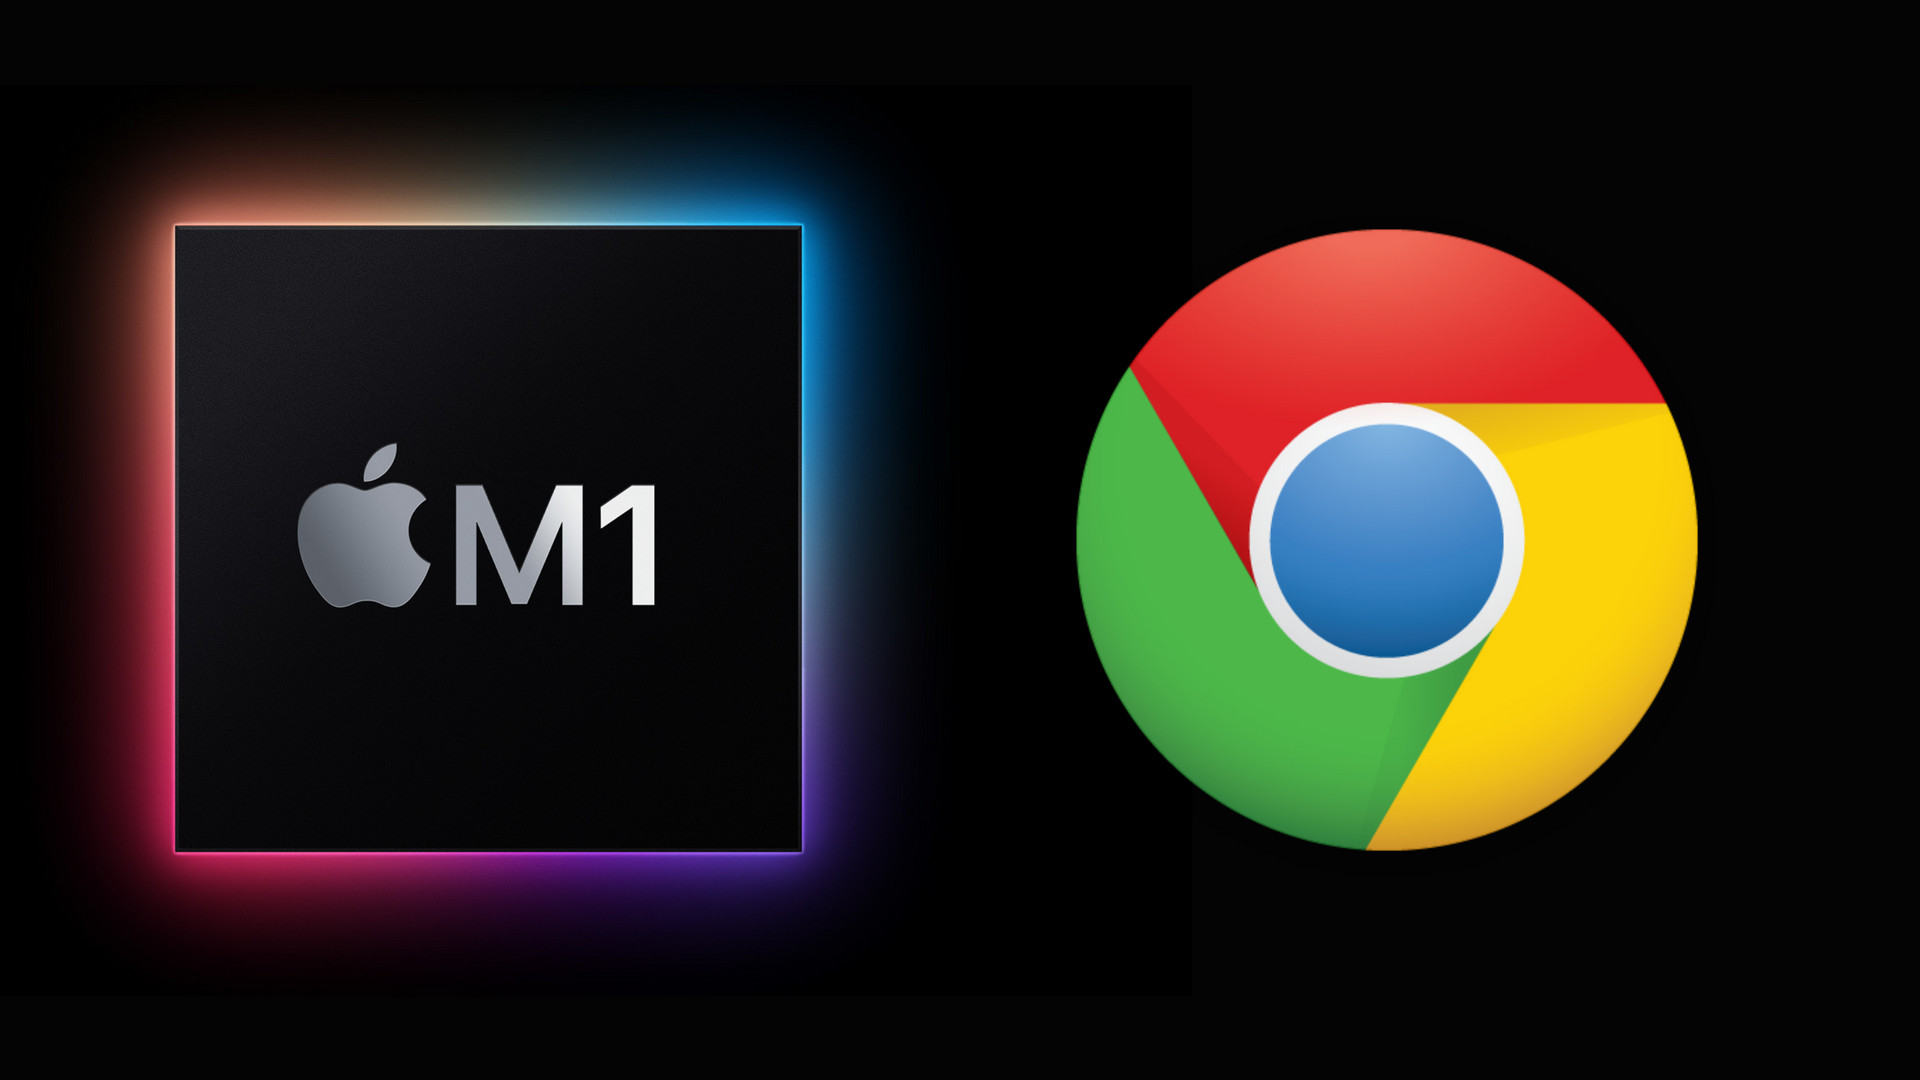 Chrome for m1